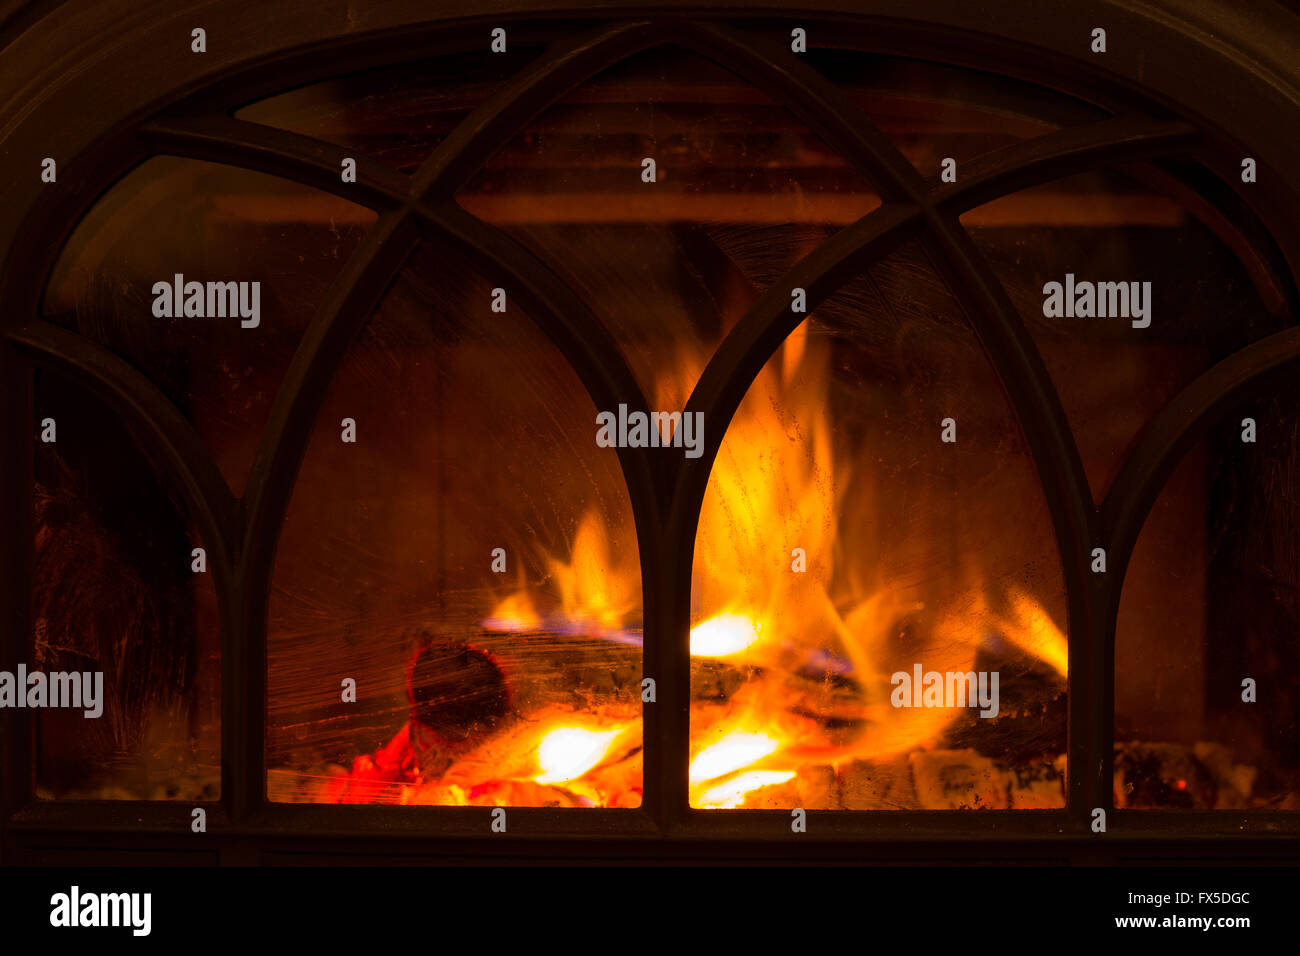 Feuer im Holzofen in einer Lodge Hütte brennt. Stockfoto